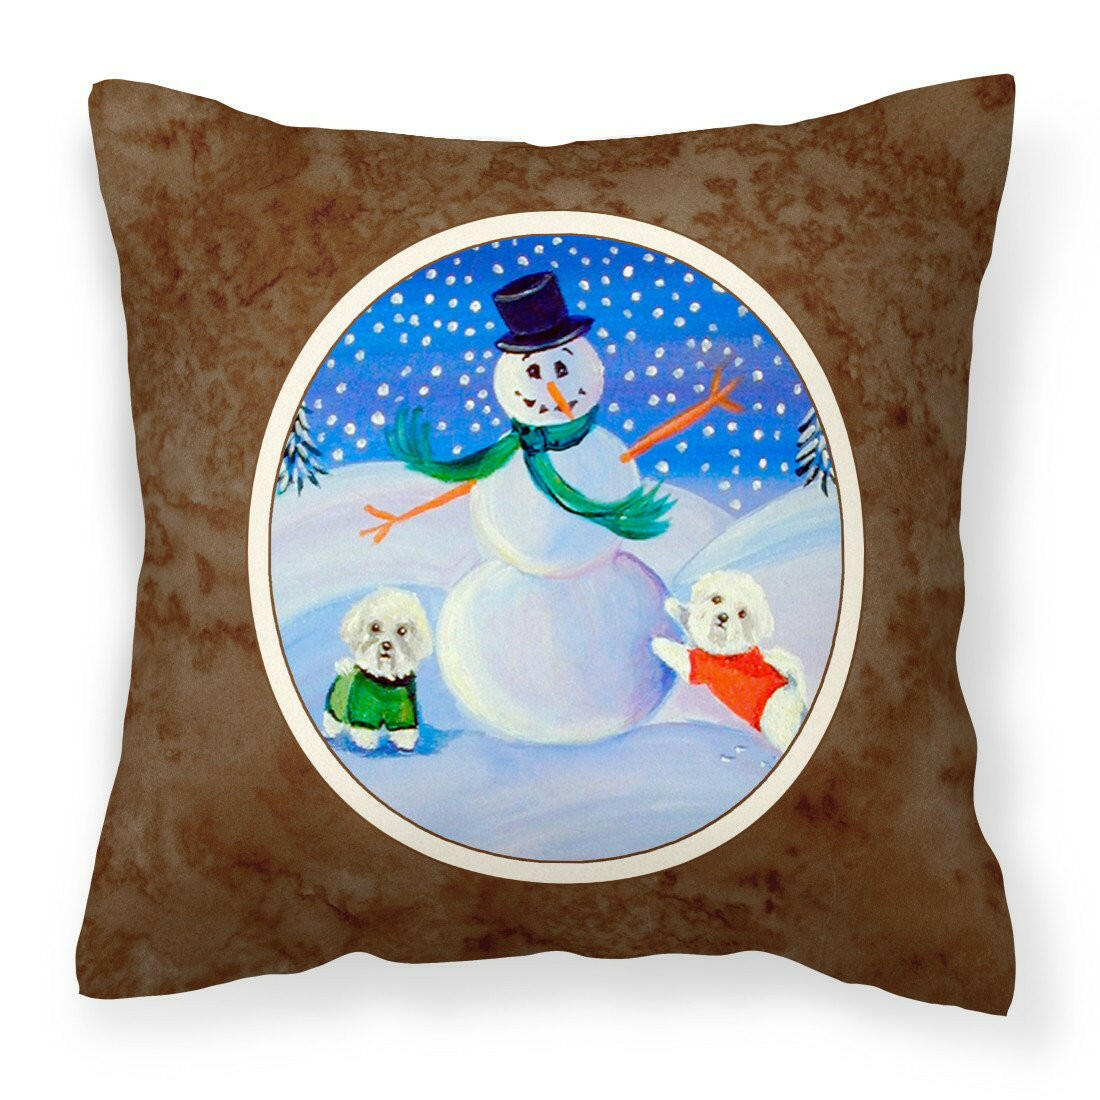 Snowman Bichon Frise Fabric Decorative Pillow 7145PW1414 - the-store.com